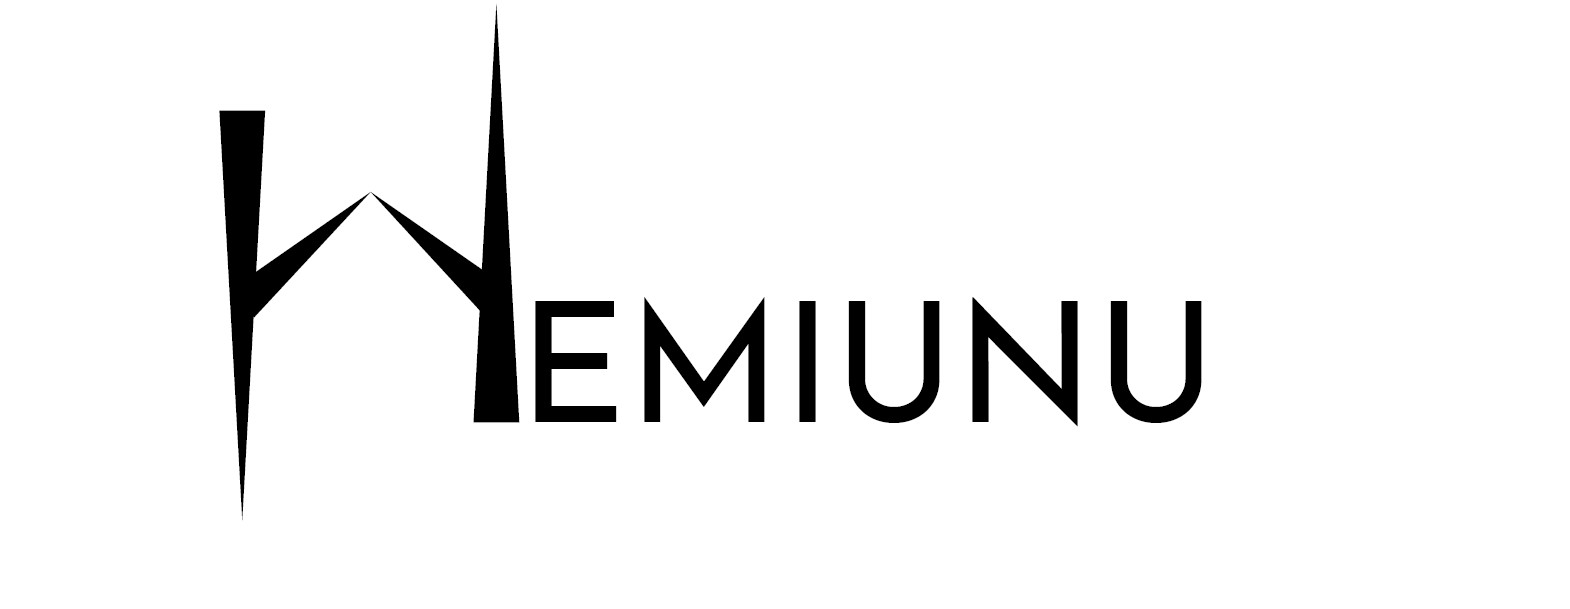 Hemiunu Constructions Solutions LLC